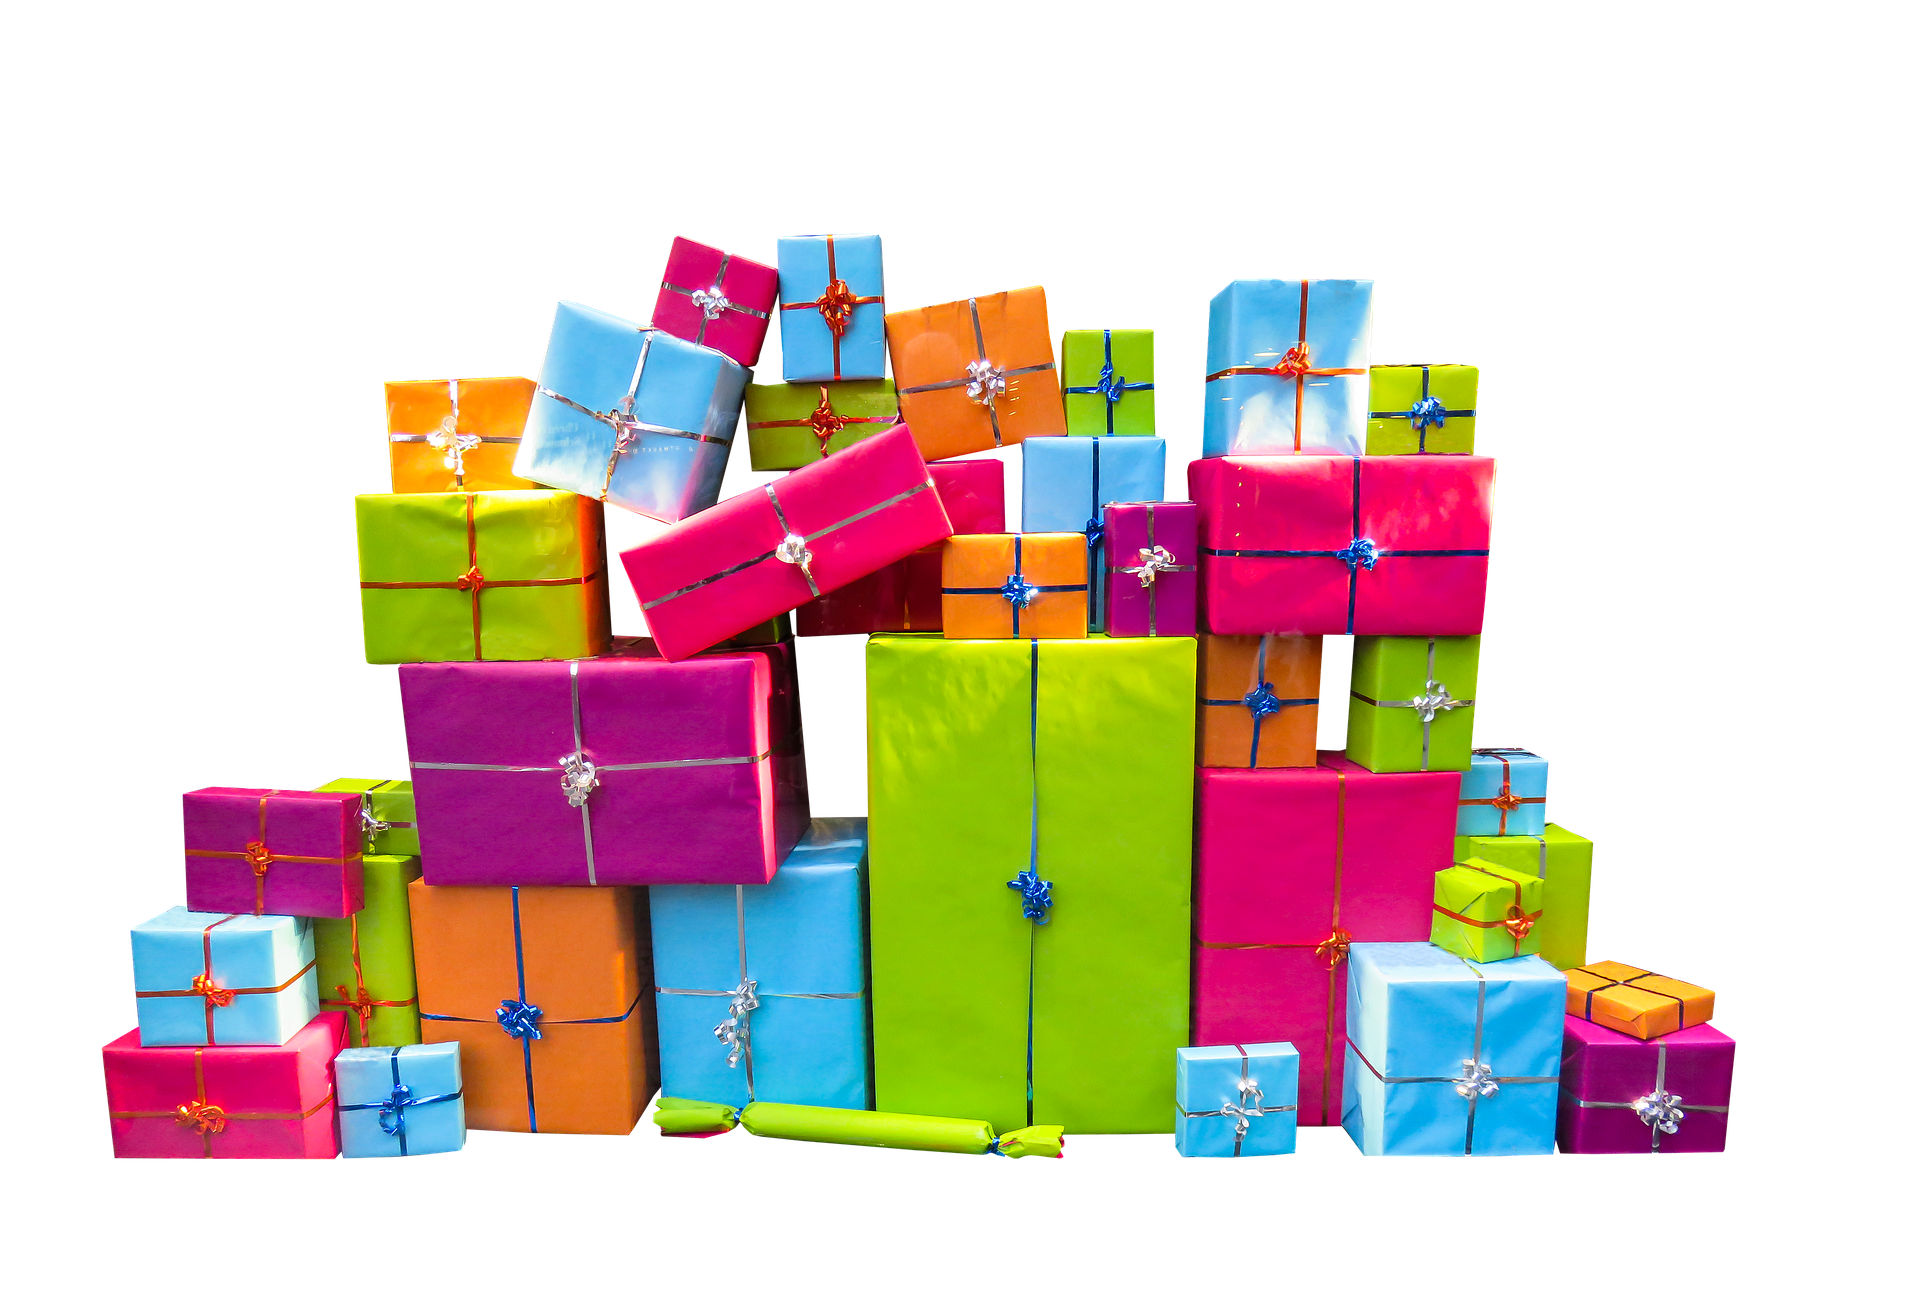 vleugel werkplaats Afwezigheid Budget Cadeaux : Combien doit-on dépenser pour un cadeau ?